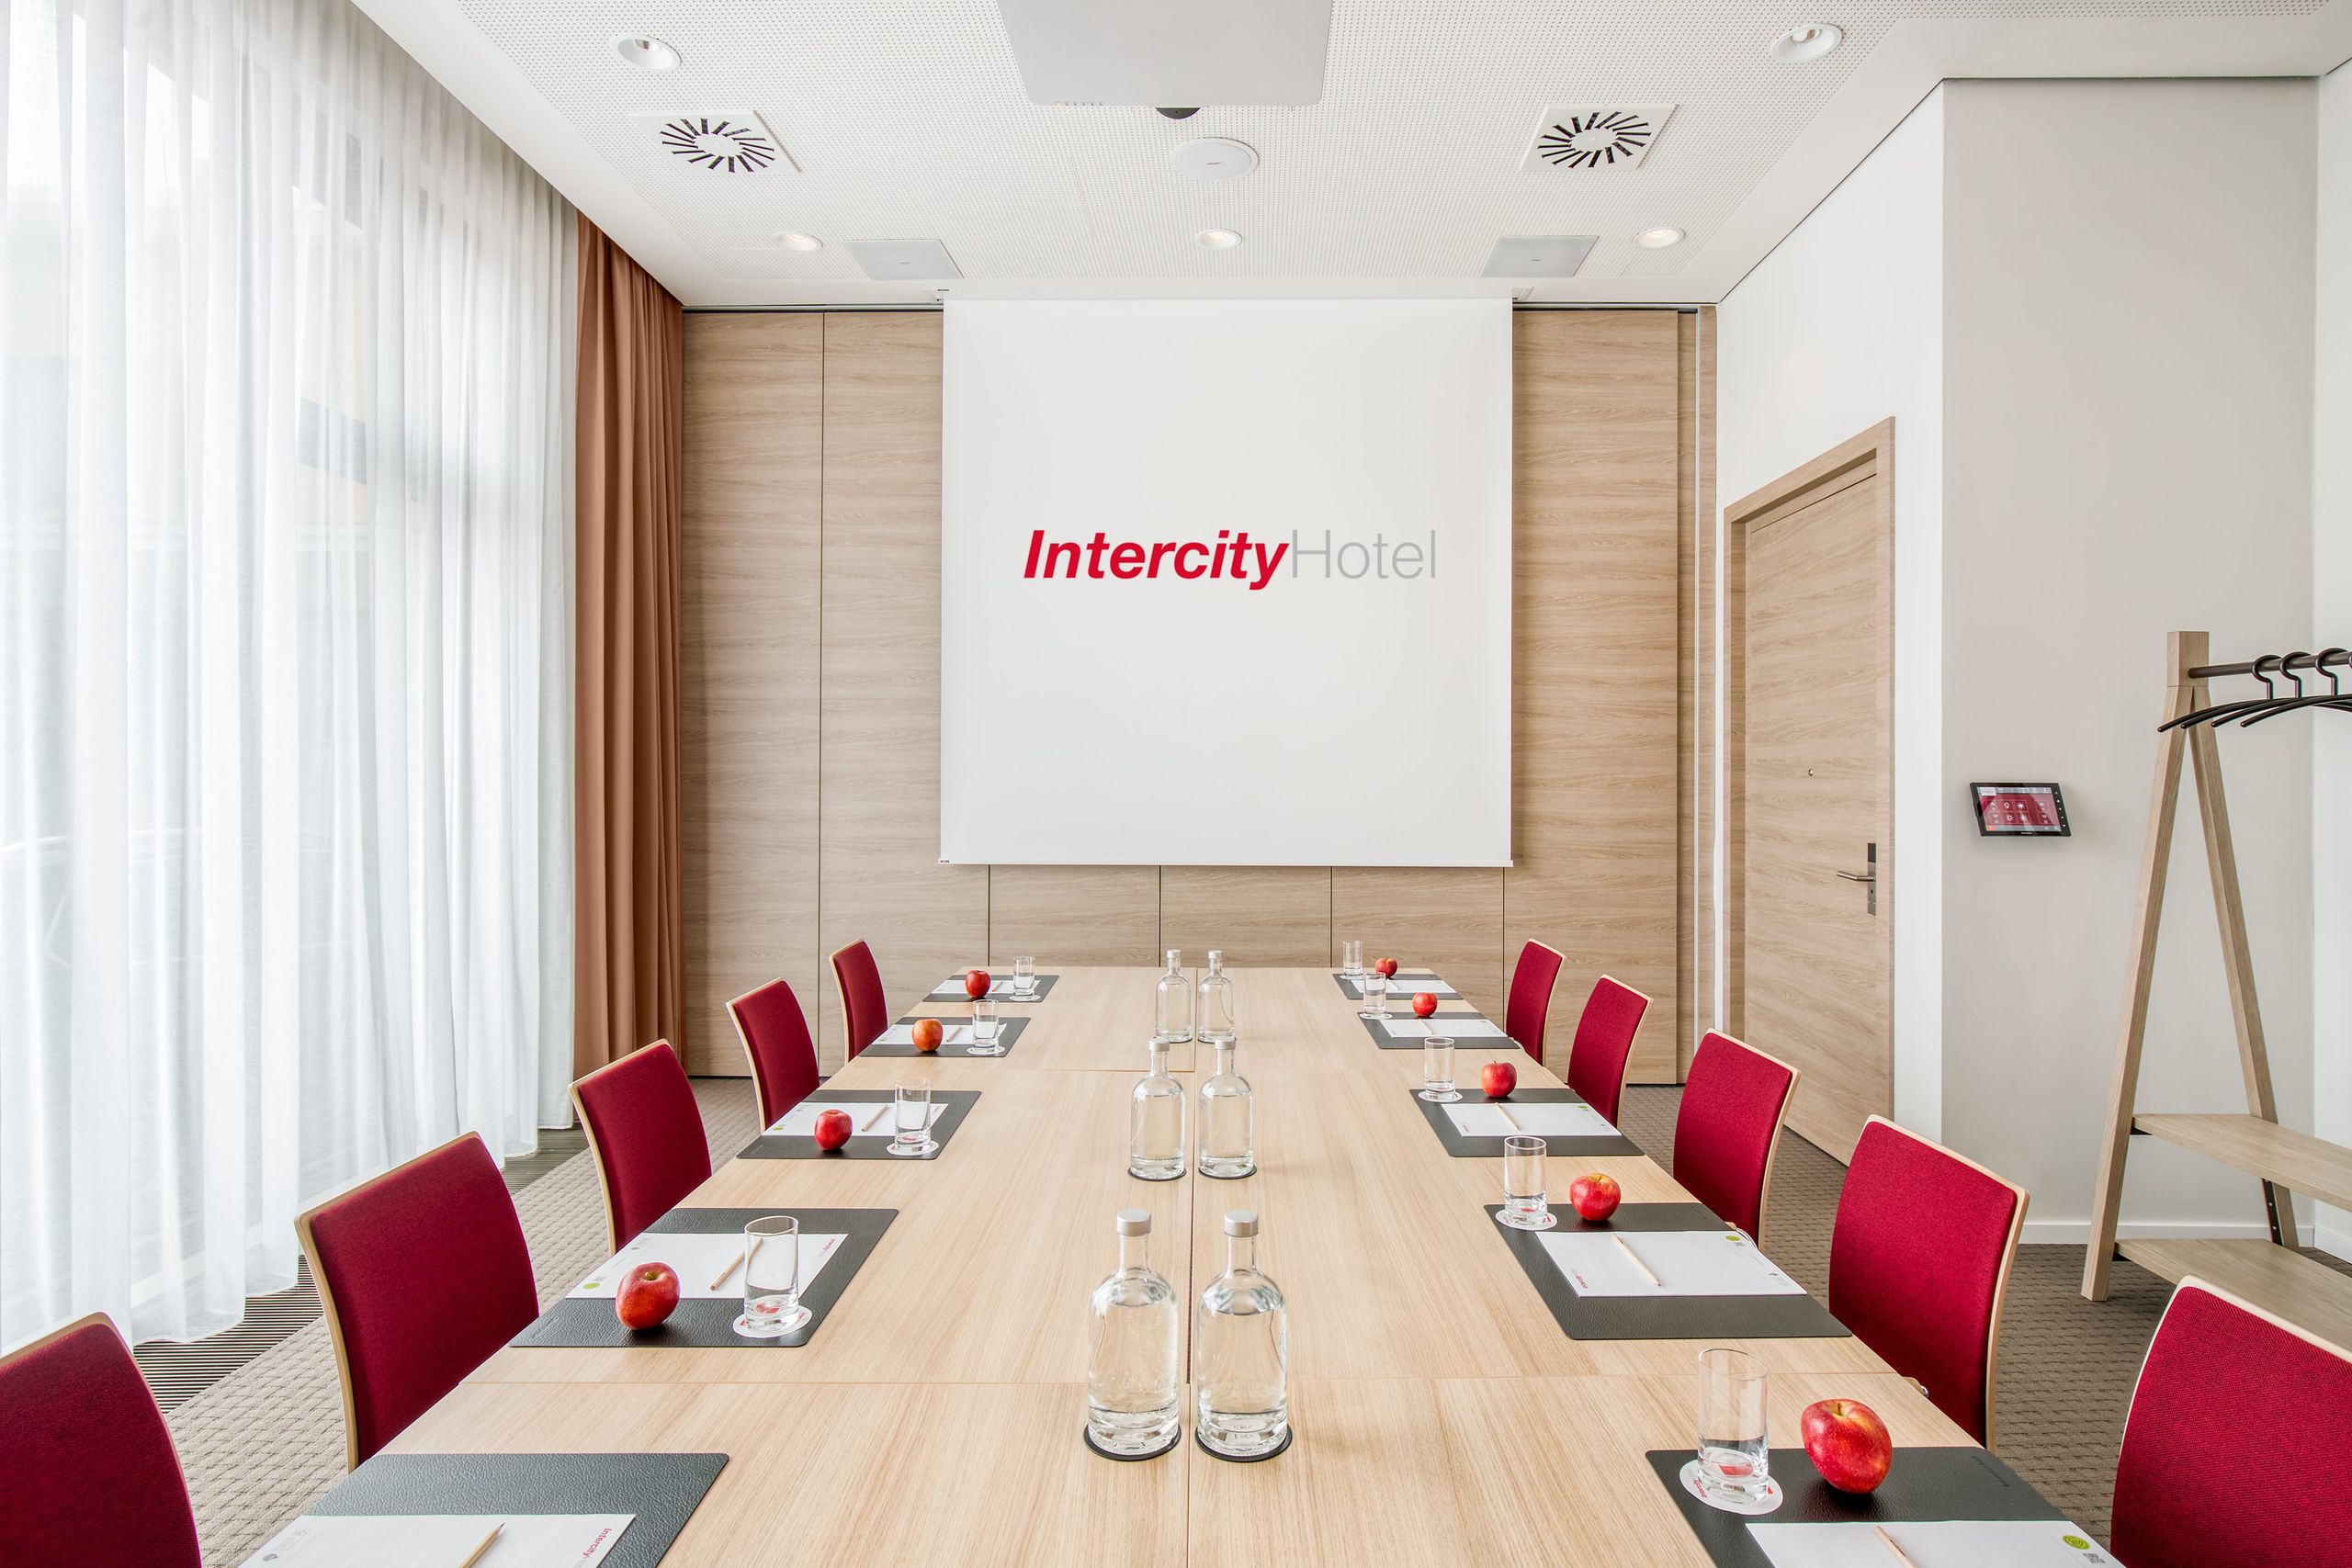 IntercityHotel Hildesheim - Réunions - Incentives - Salles de conférence - Événements